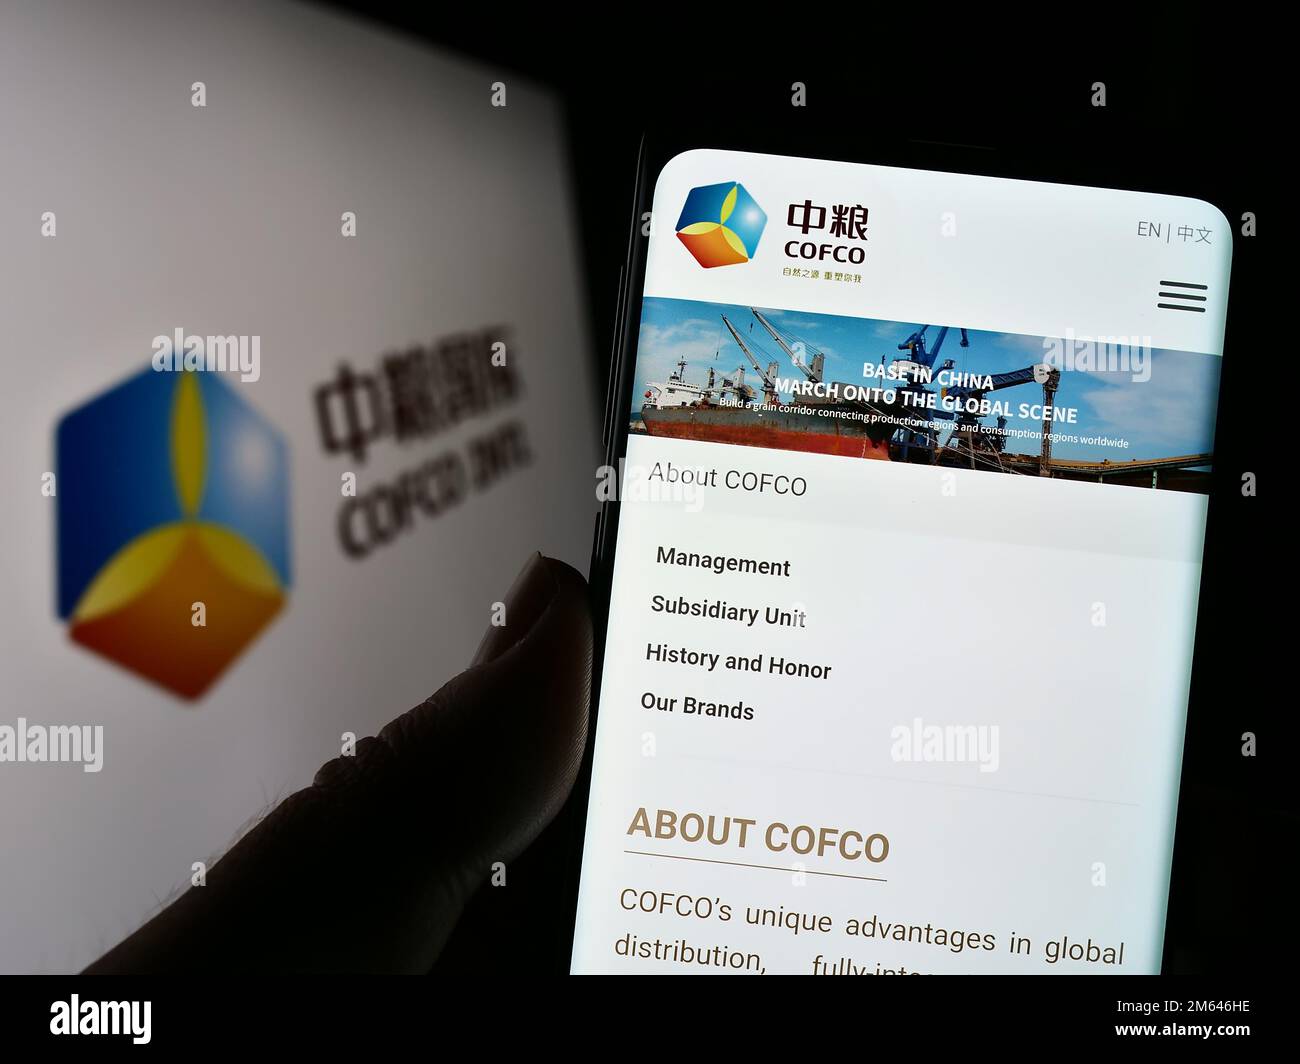 Personne tenant un smartphone avec le site Web de China Oil and agro Corporation (COFCO) à l'écran avec le logo. Concentrez-vous sur le centre de l'écran du téléphone. Banque D'Images